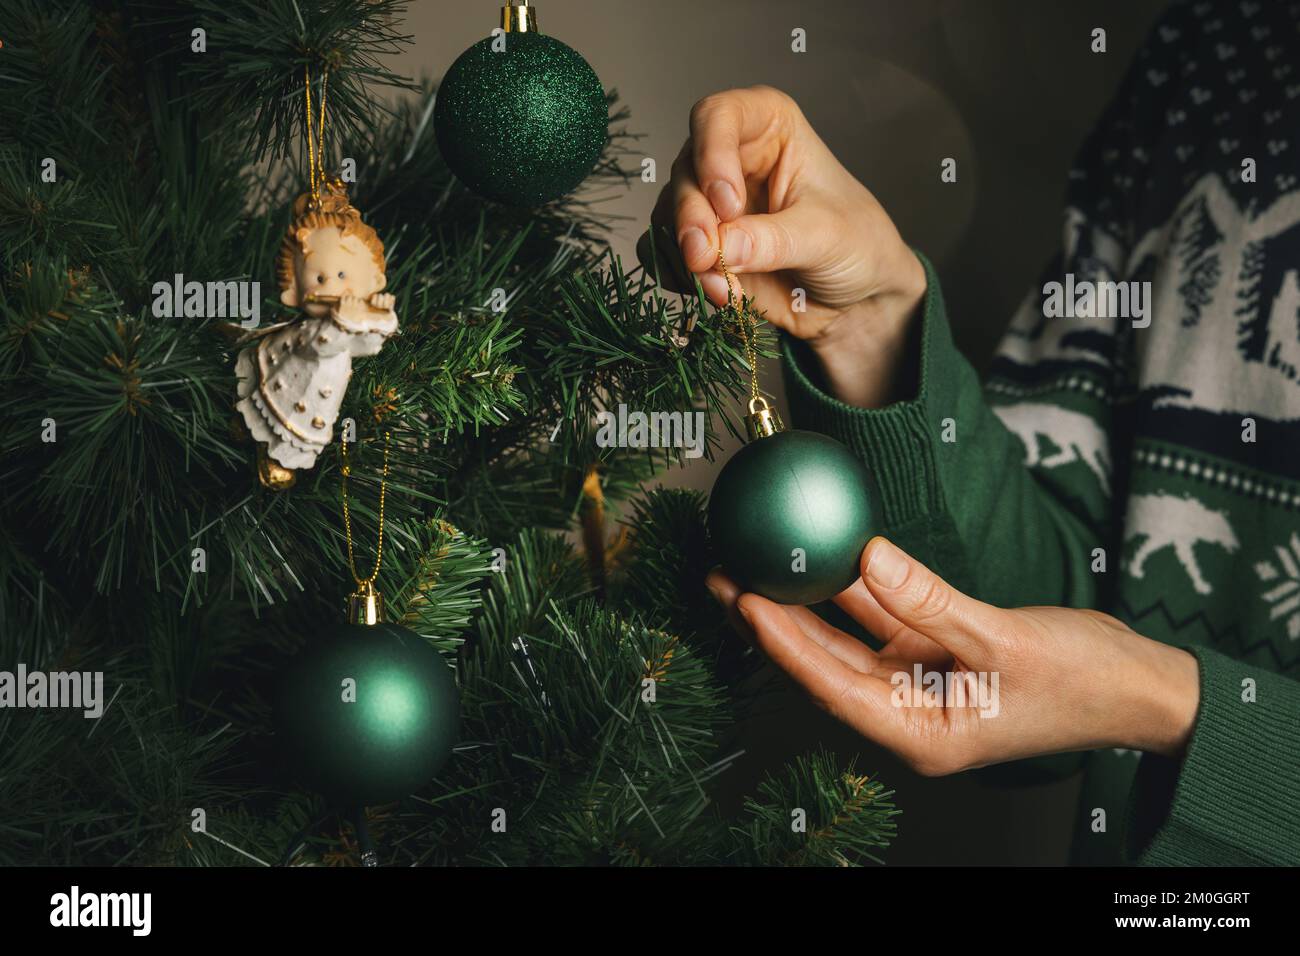 Einen weihnachtsbaum schmücken. Eine Nahaufnahme weiblicher Hände hängt einen grünen Ball an einen Ast Stockfoto